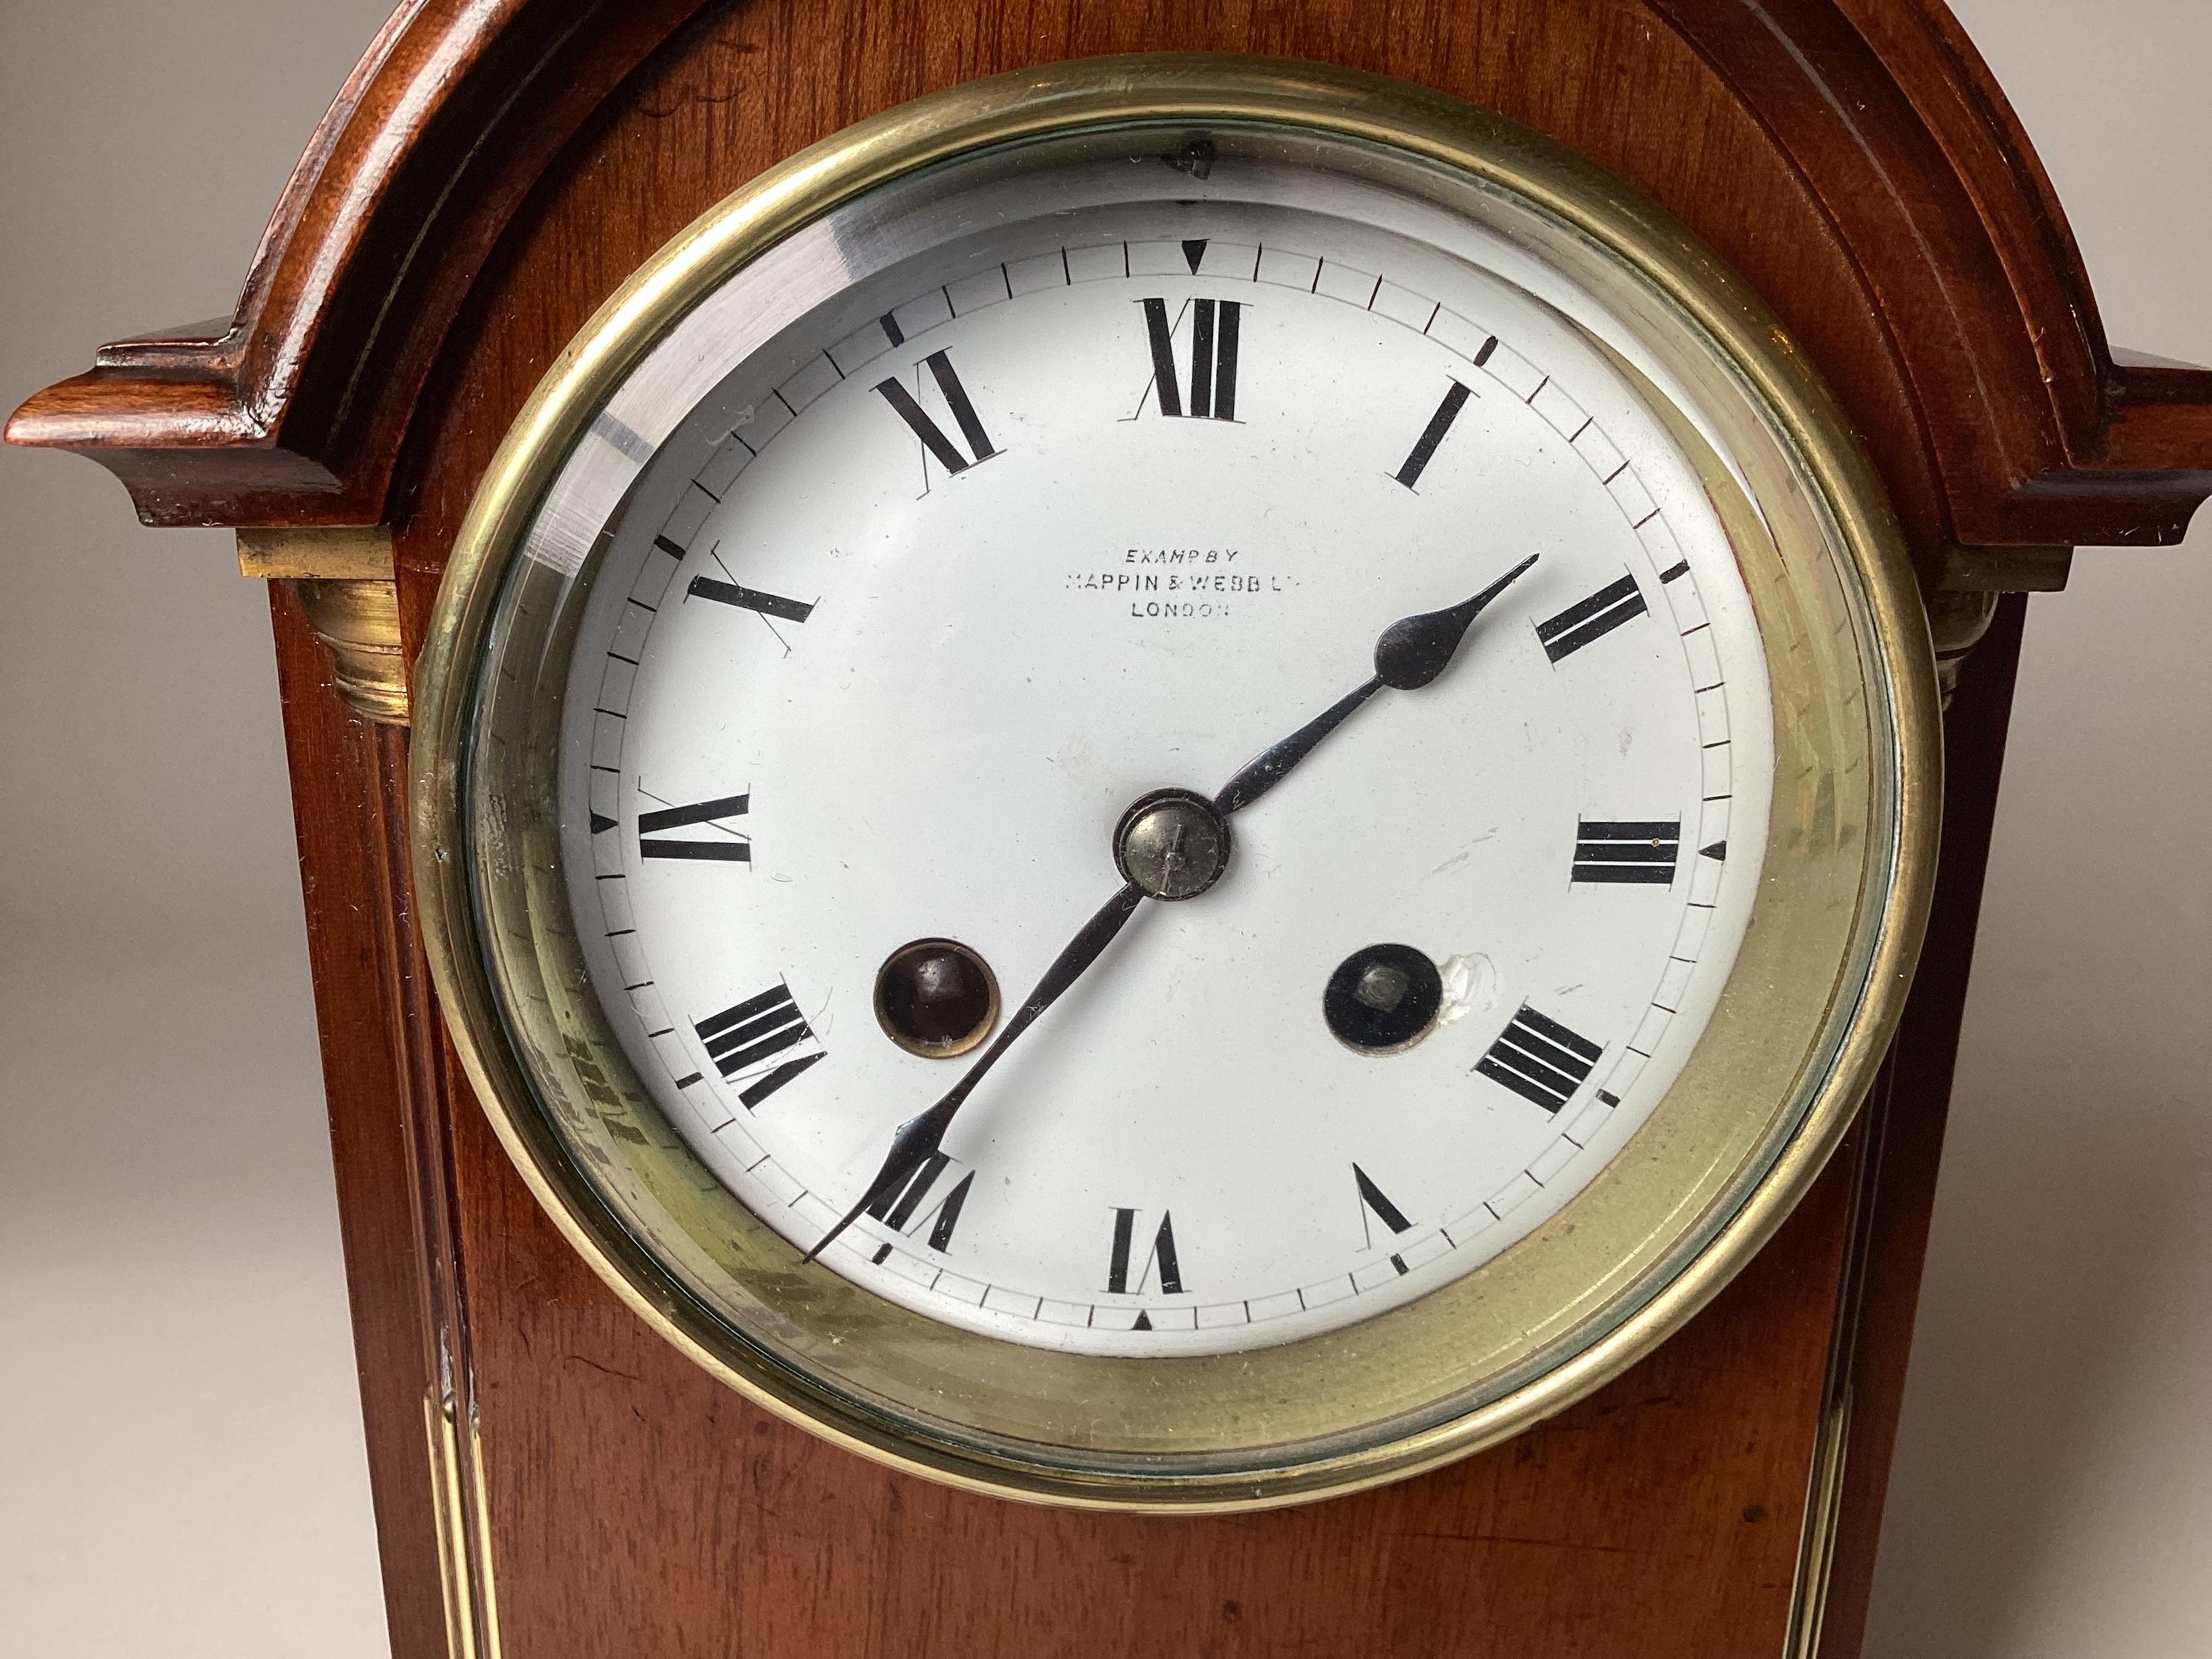 Pequeño reloj de chimenea francés de caoba, vendido por Mappin & Webb, s. XIX. Renacimiento gótico